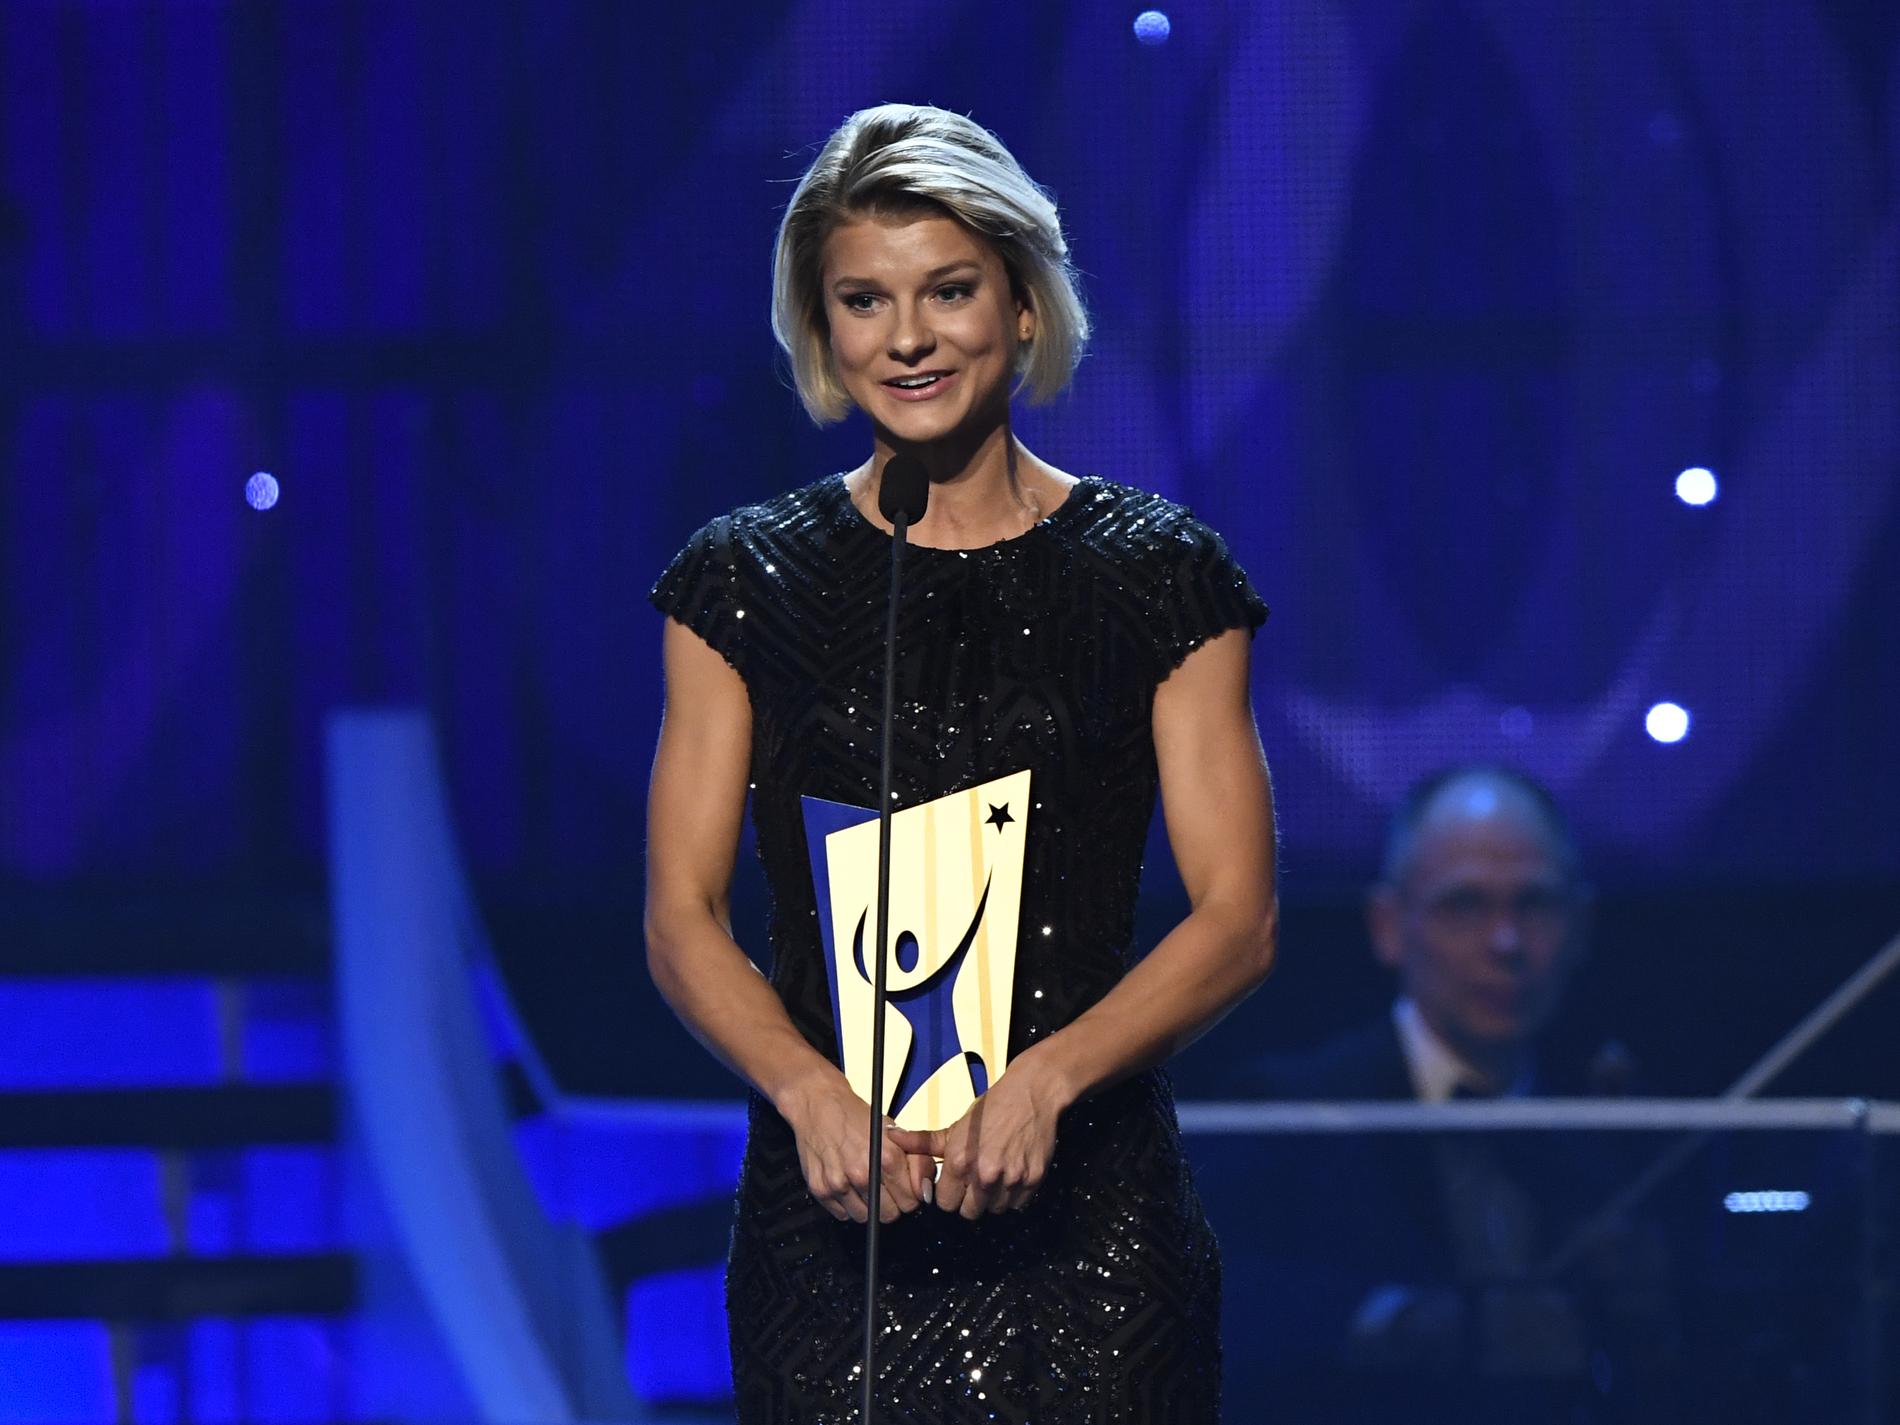 Jenny Rissveds tilldelas priset Årets Prestation.